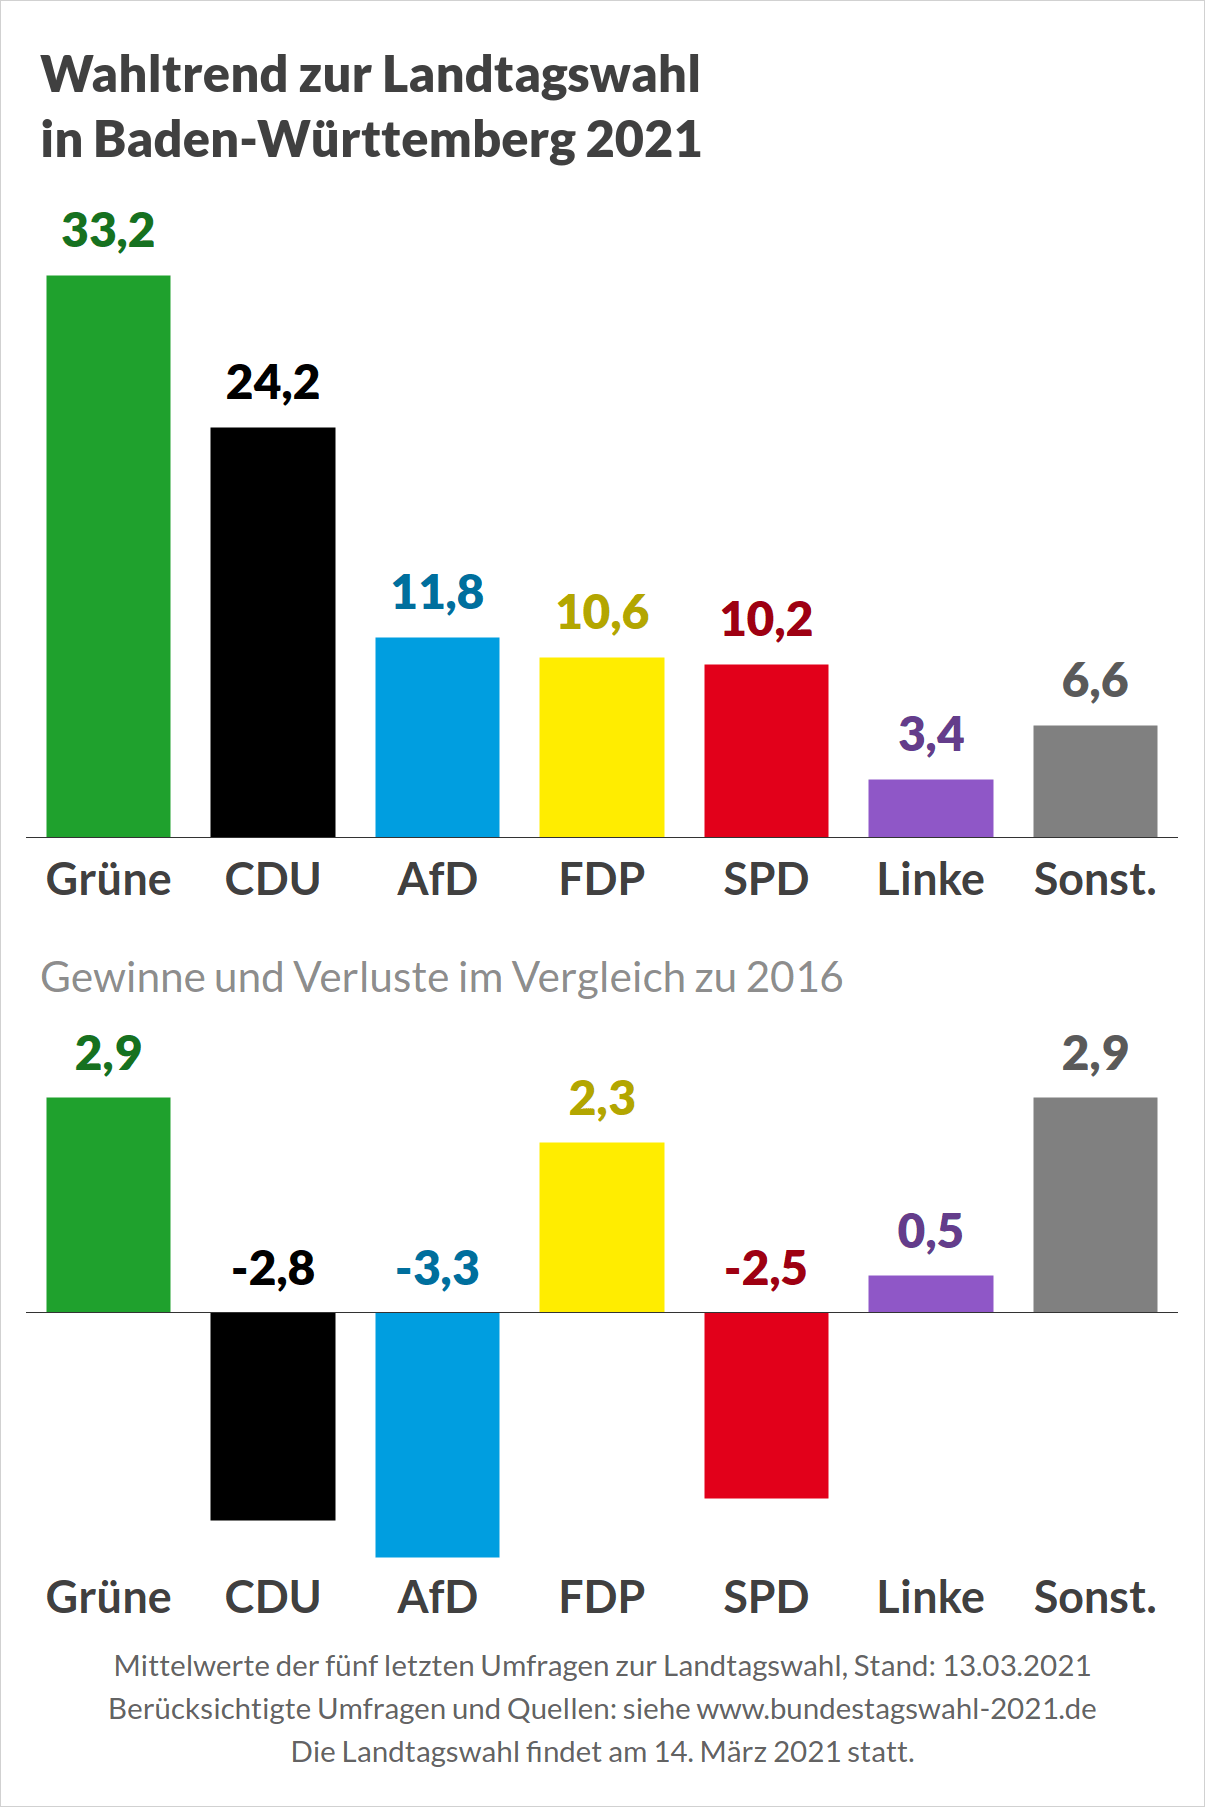 Wahltrend zur Landtagswahl in Baden-Württemberg (Durchschnitt der letzten Umfragen)